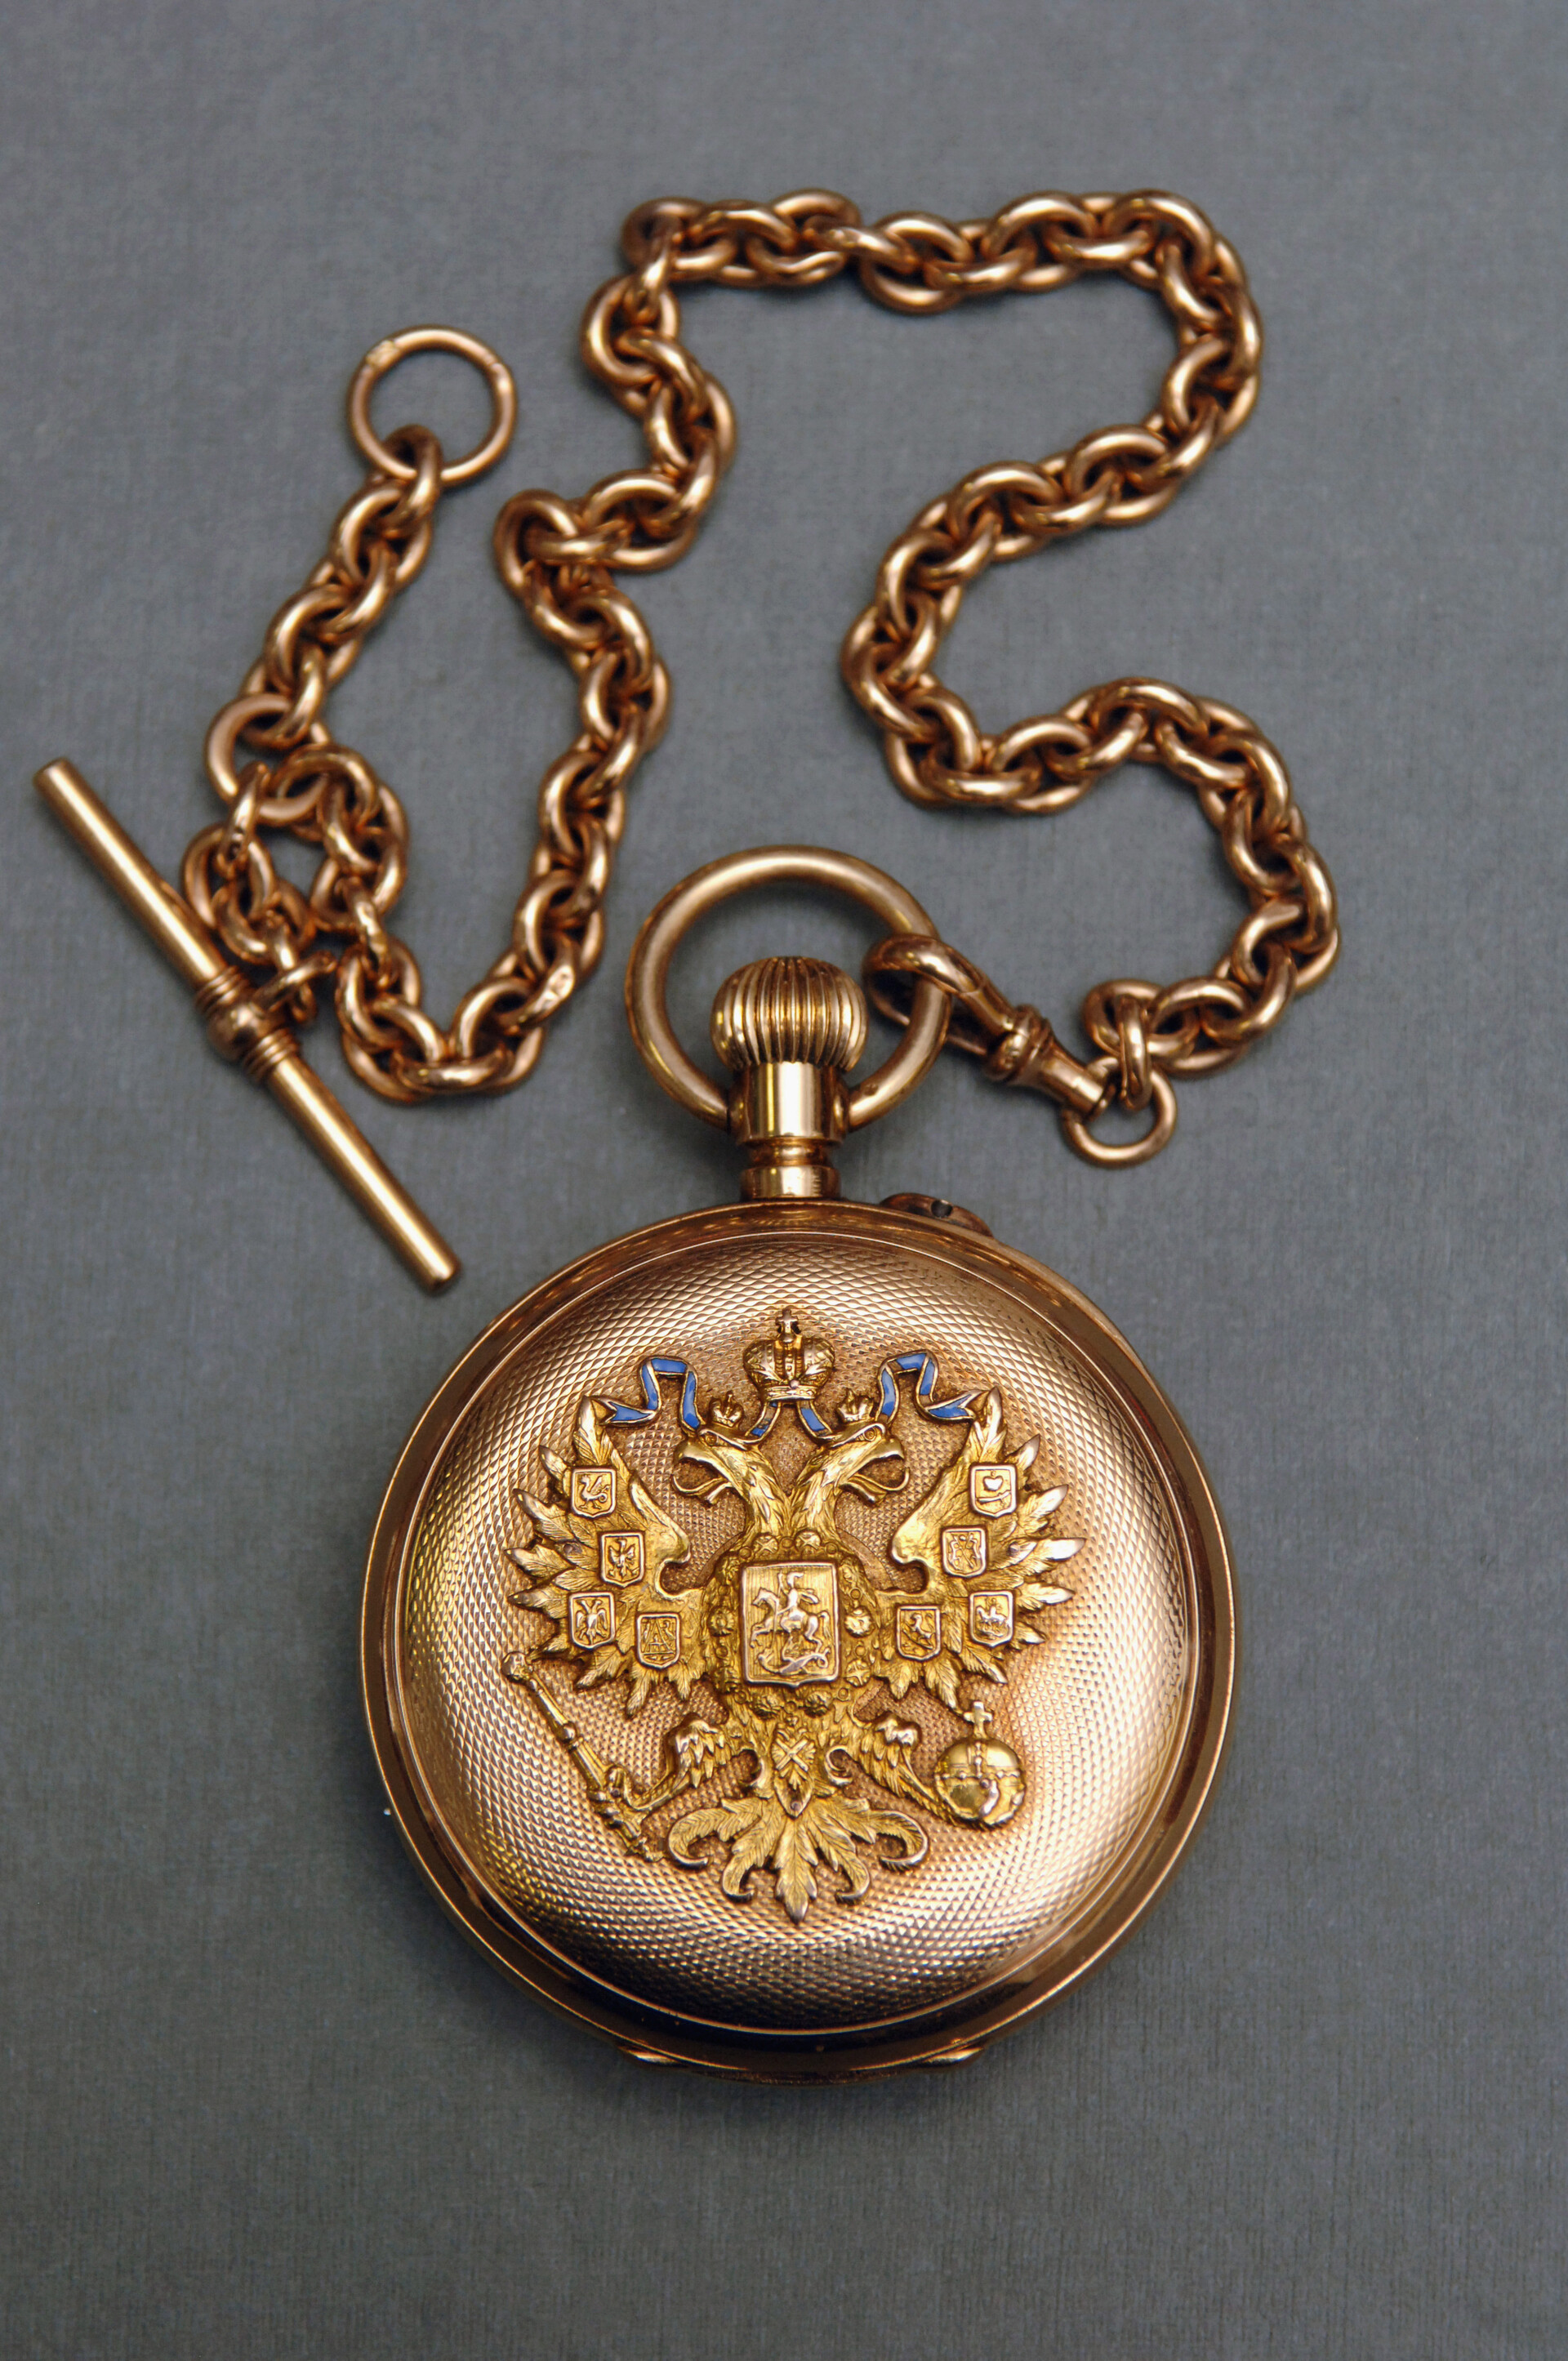 Odprta žepna ura z verižico. Darilo iz kabineta Njegovega cesarskega veličanstva. Ura - Švica (mehanizem). Trgovska hiša 